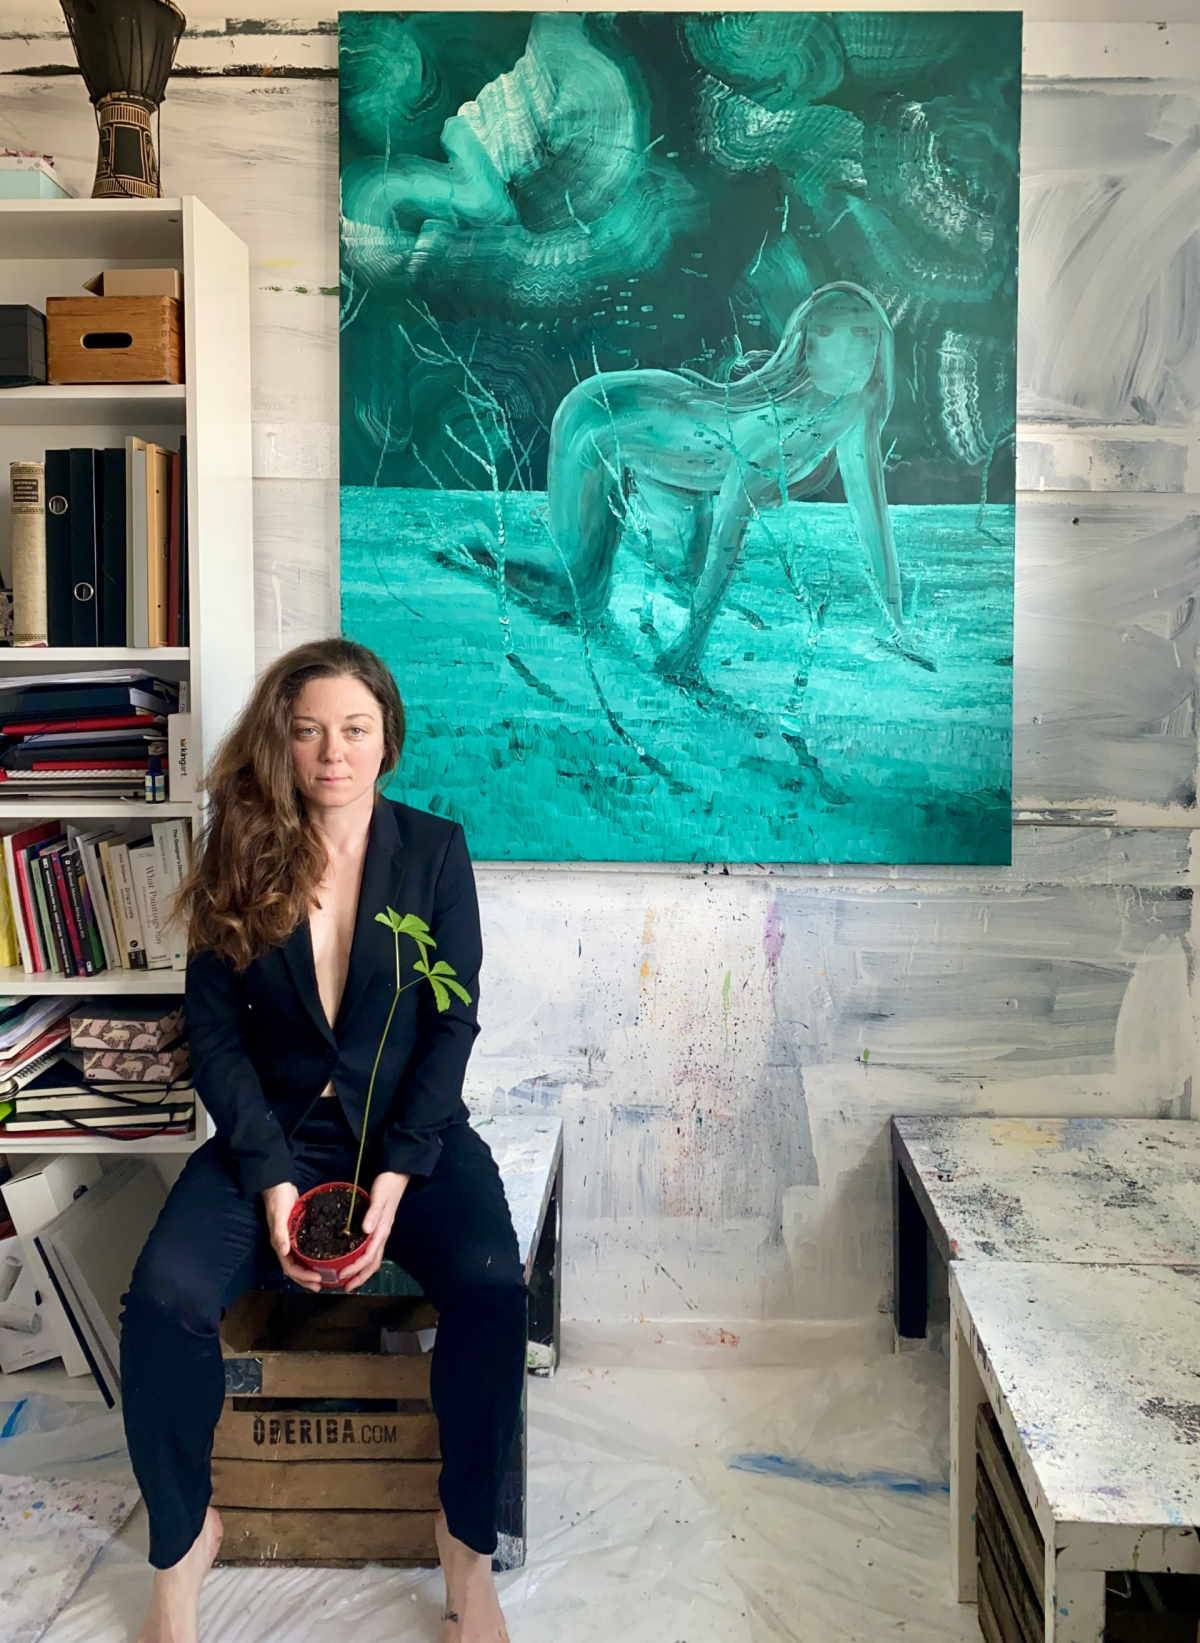 Wernisaż prac Natalii Bażowskiej w Maison Sisley. Absolwentka katowickiej Akademii Sztuk Pięknych, Natalia Bażowska podczas marcowego wernisażu w butiku marki Sisley Paris – Maison Sisley zaprezentuje cykl o potrzebie odczuwania. 